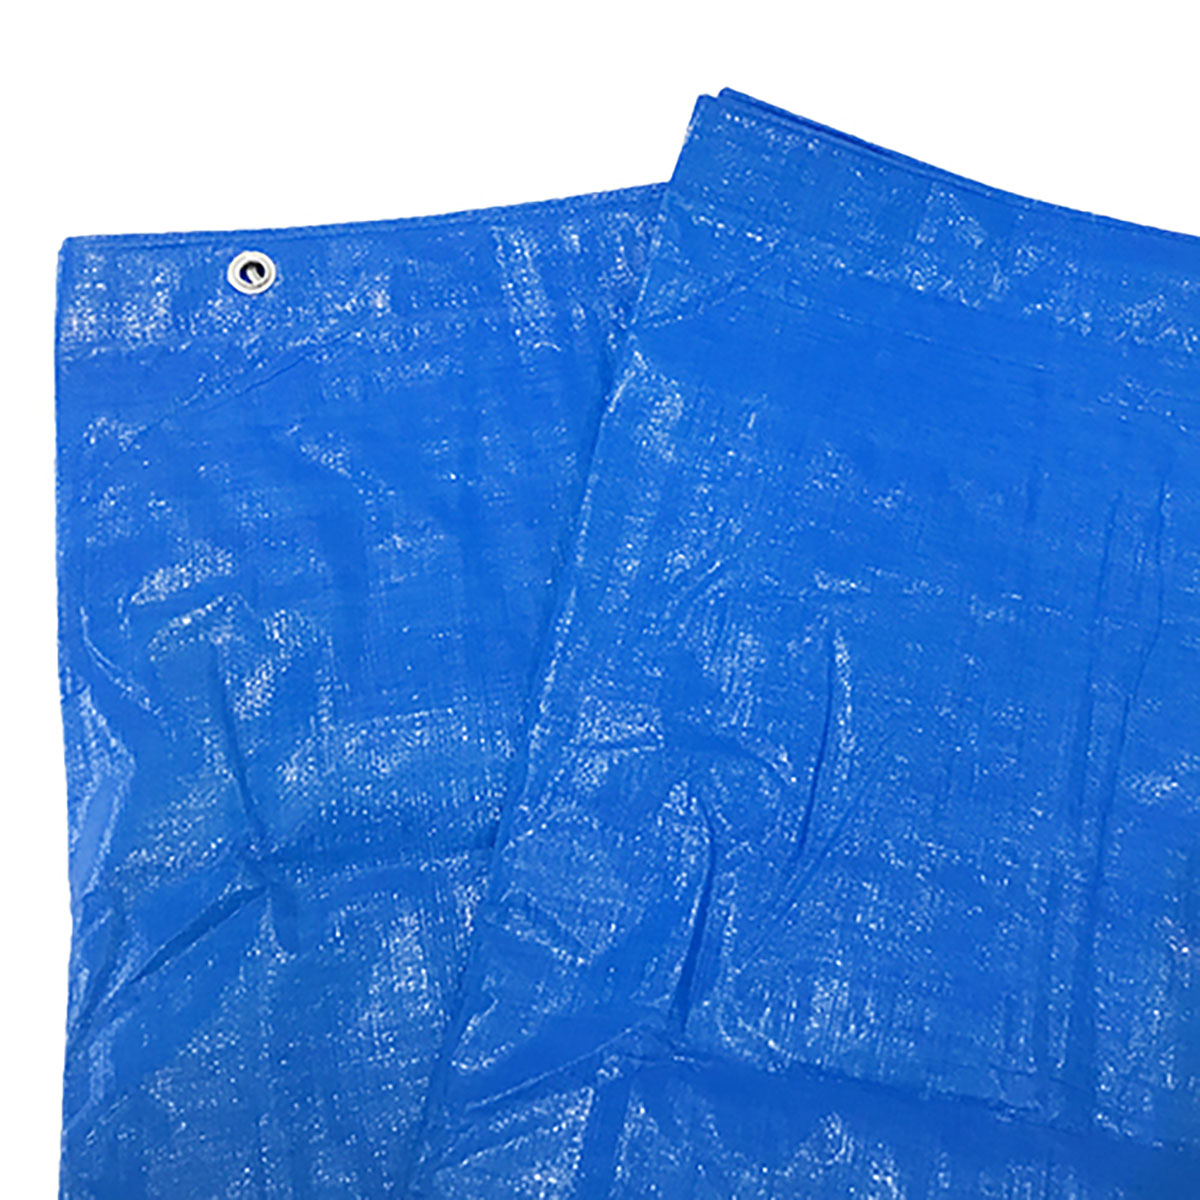 ブルーシート 巾約8.7×長さ約8.9m #3000